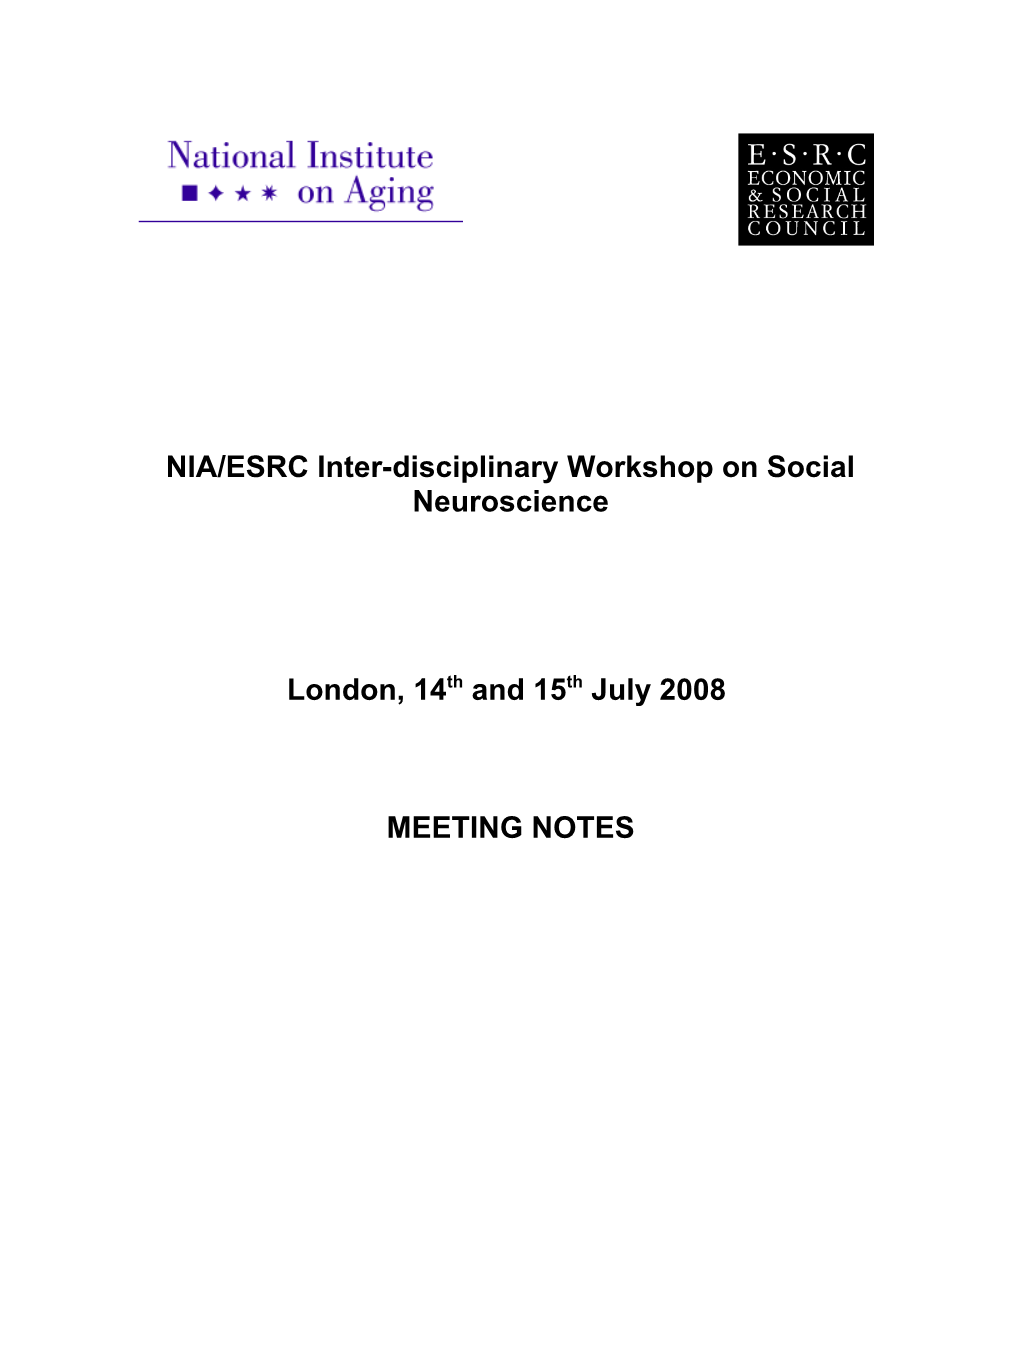 NIA/ESRC Inter-Disciplinary Workshop on Social Neuroscience